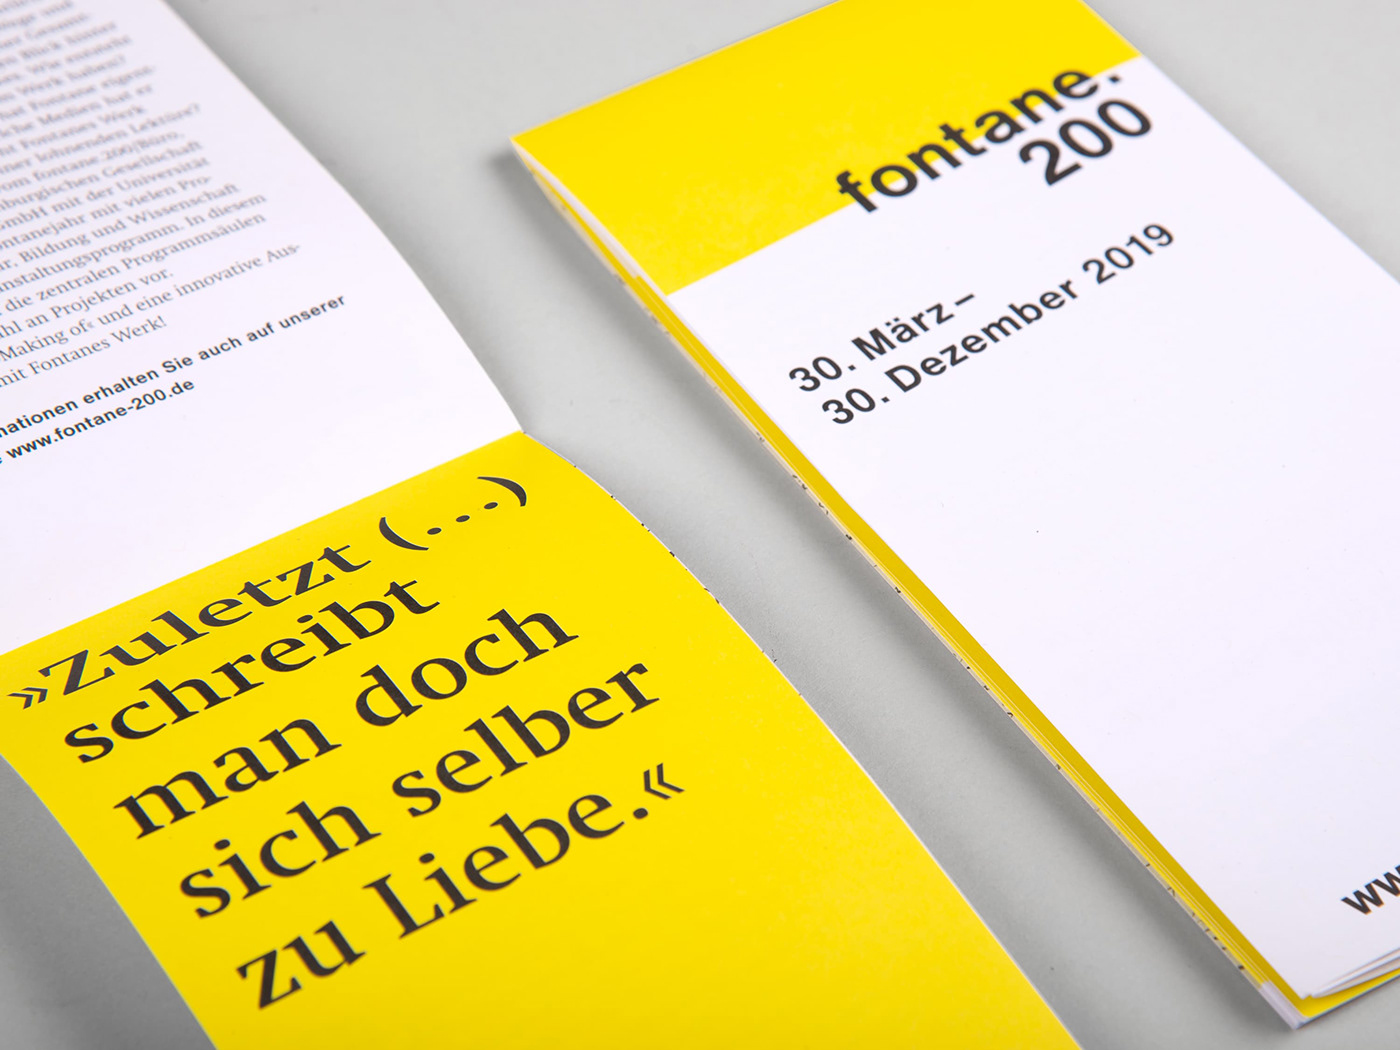 Brandenburg broschure Exhibition  Exhibition Design  Fontane graphic design  poster Typographie yellow